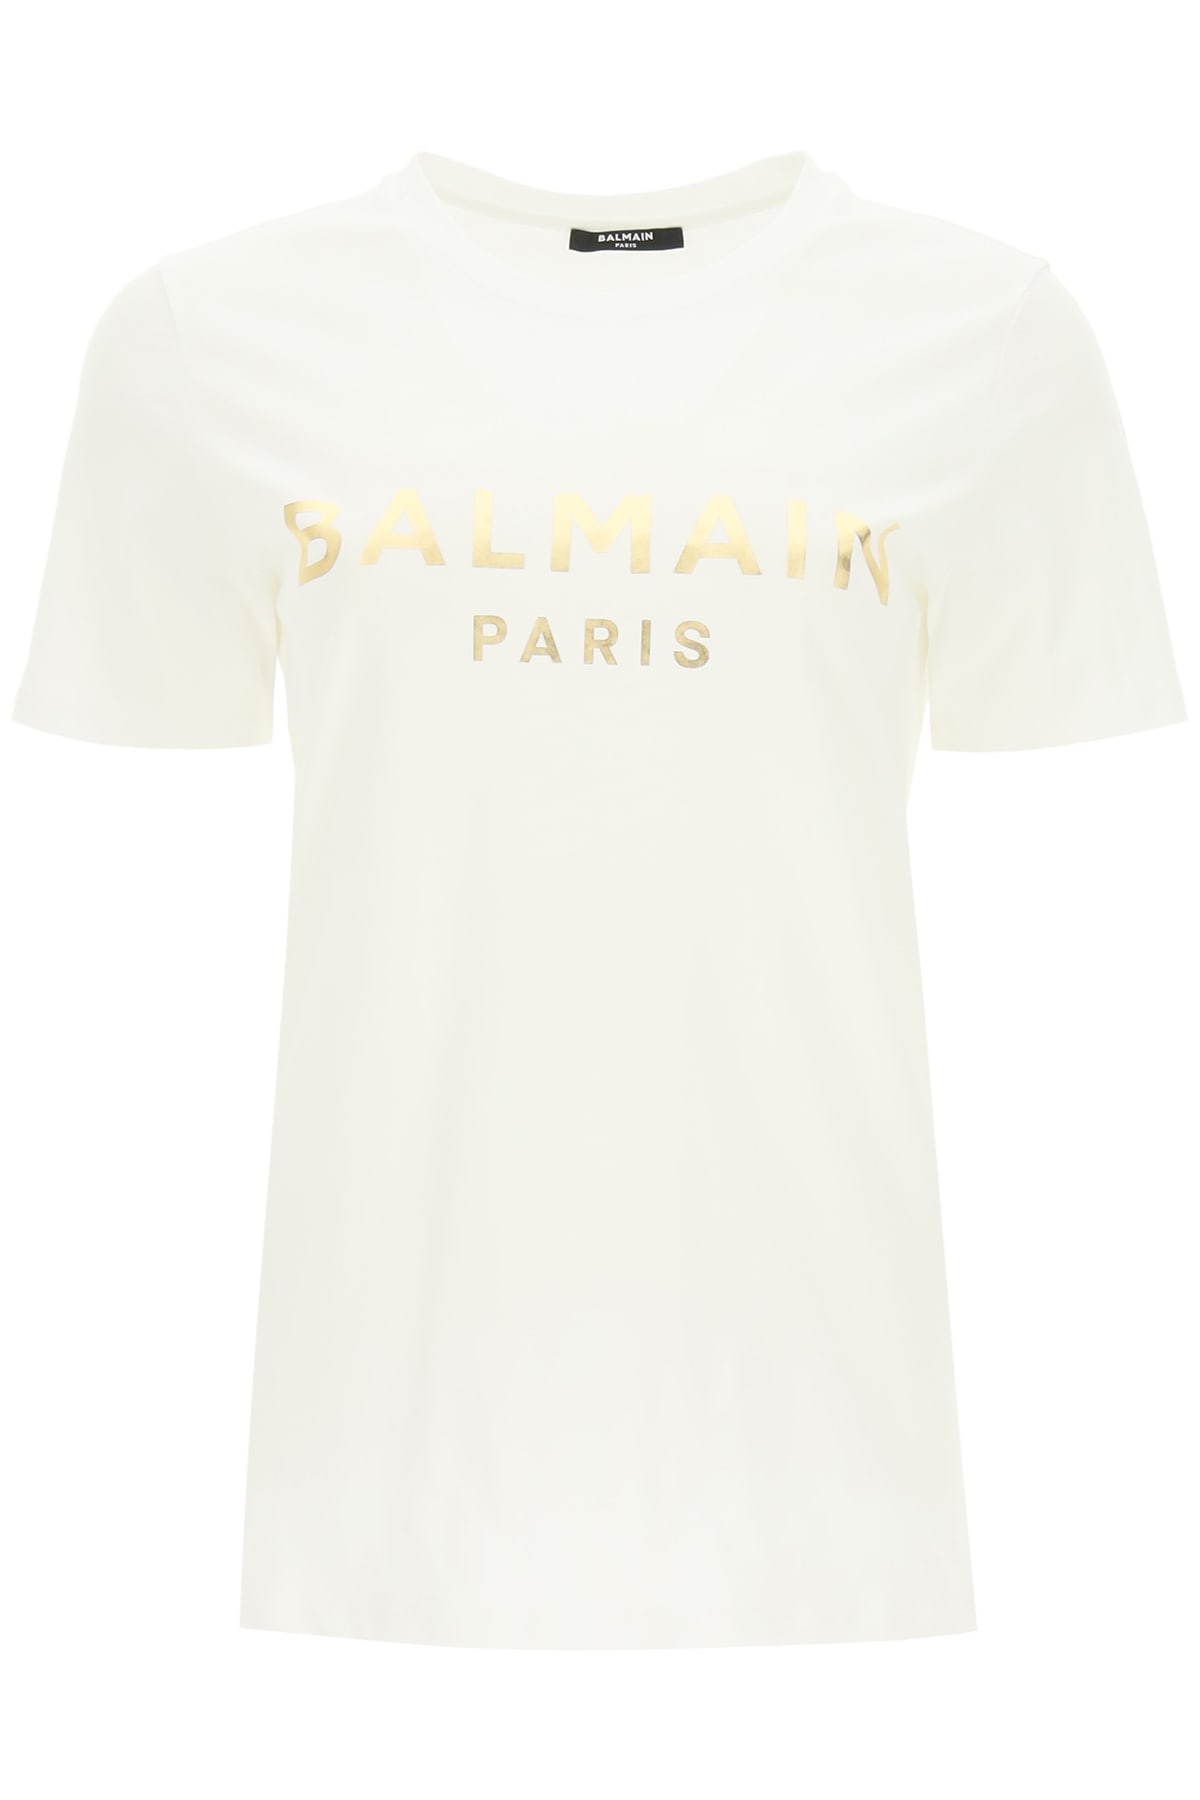 Balmain T-shirt With Metallic Gold Logo